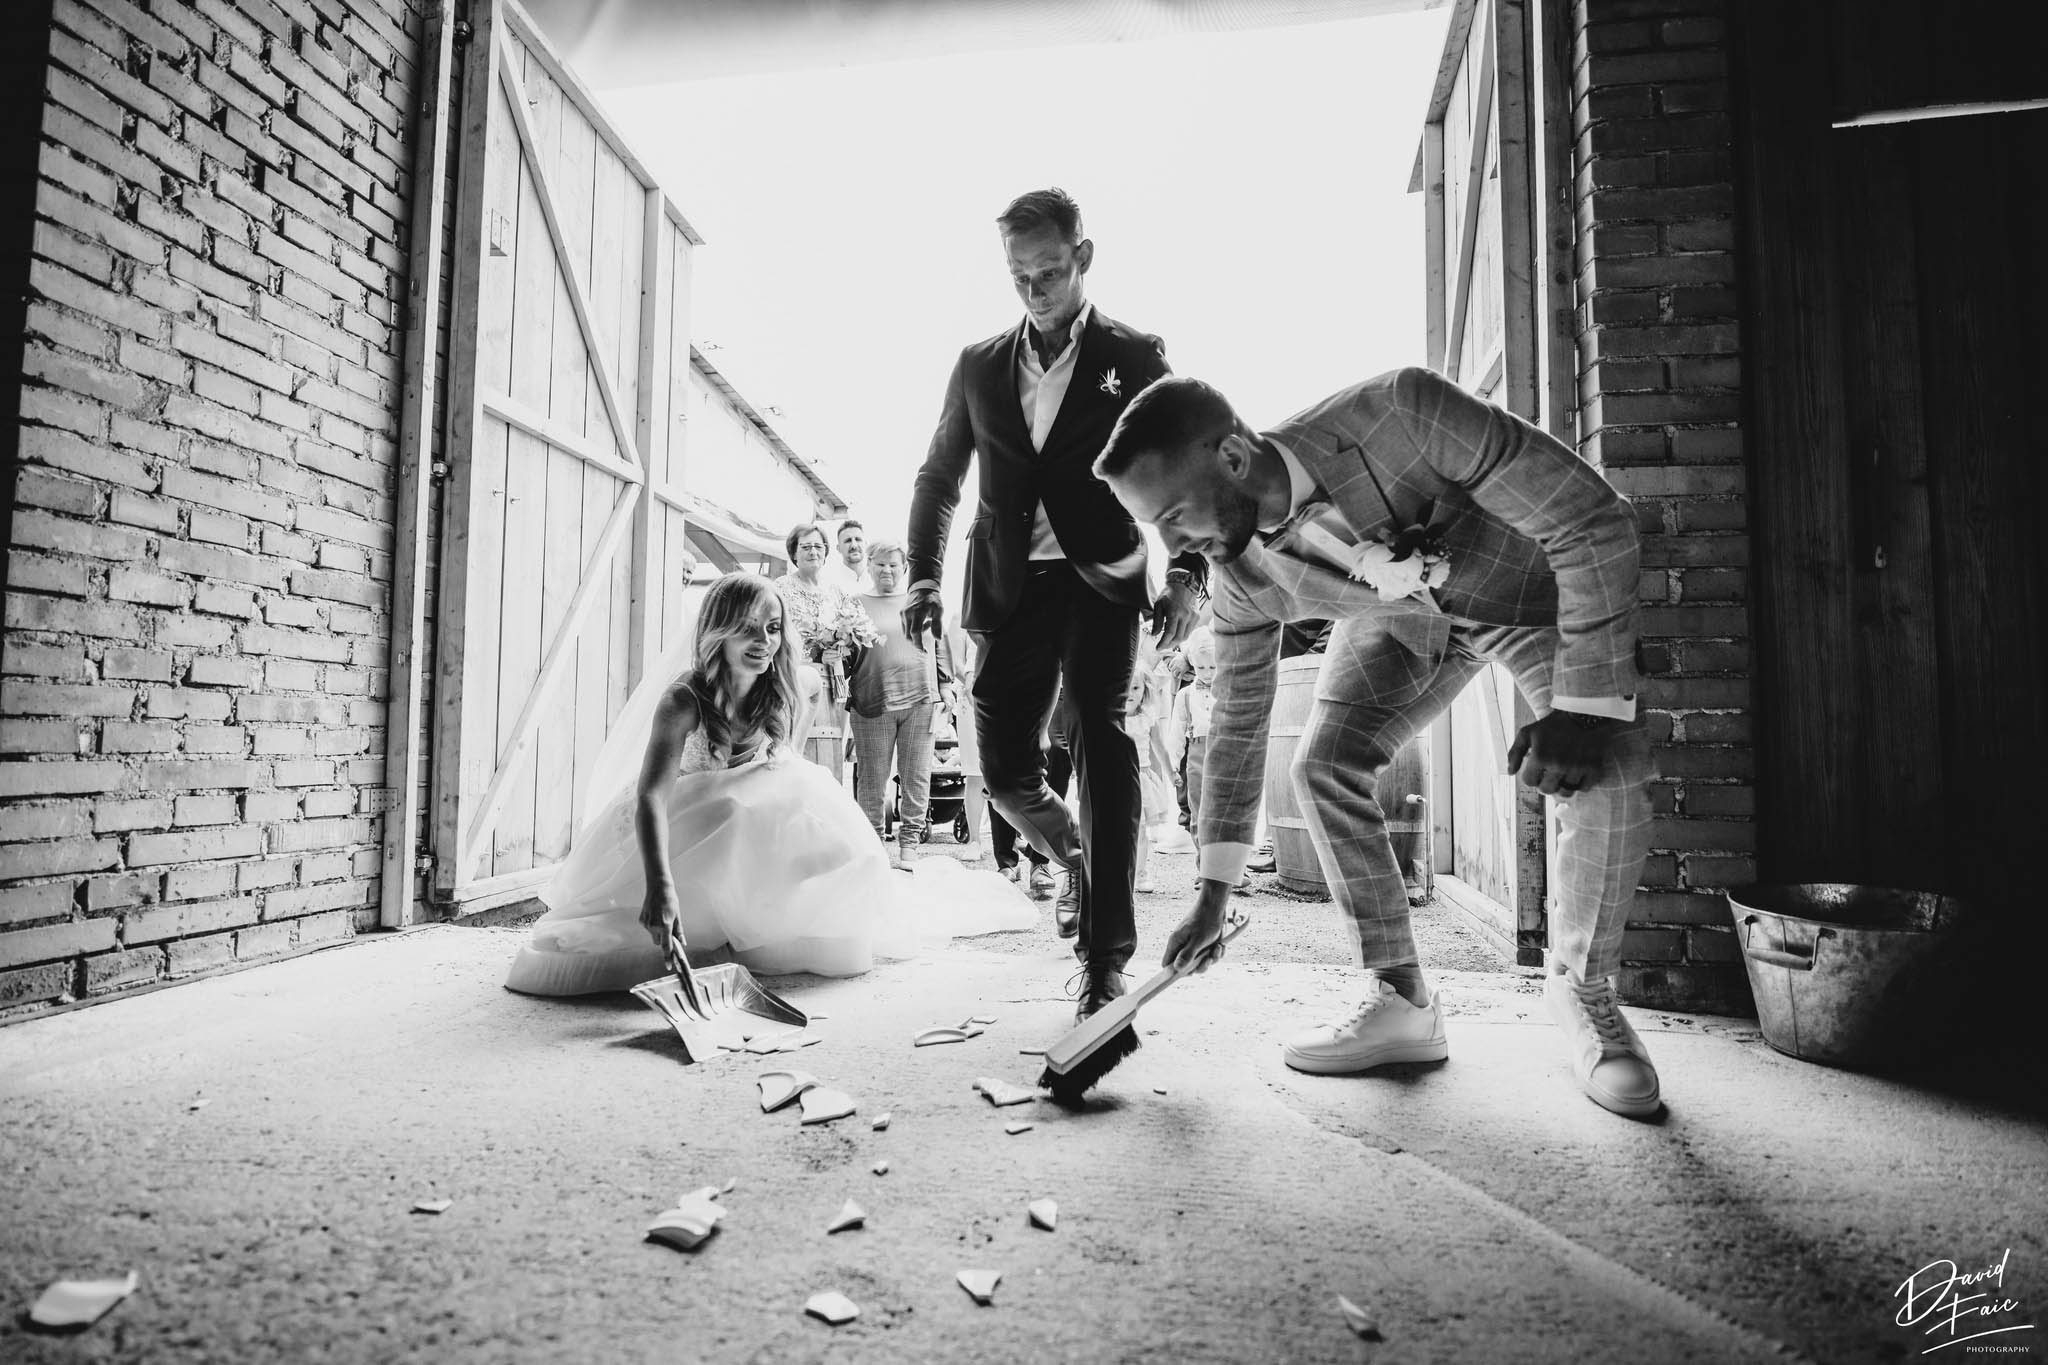 David Faic photography, svatba, svatební fotograf, svatební fotograf jižní Čechy, svatební fotograf Tábor, svatební fotoalba, profesionální svatební fotograf